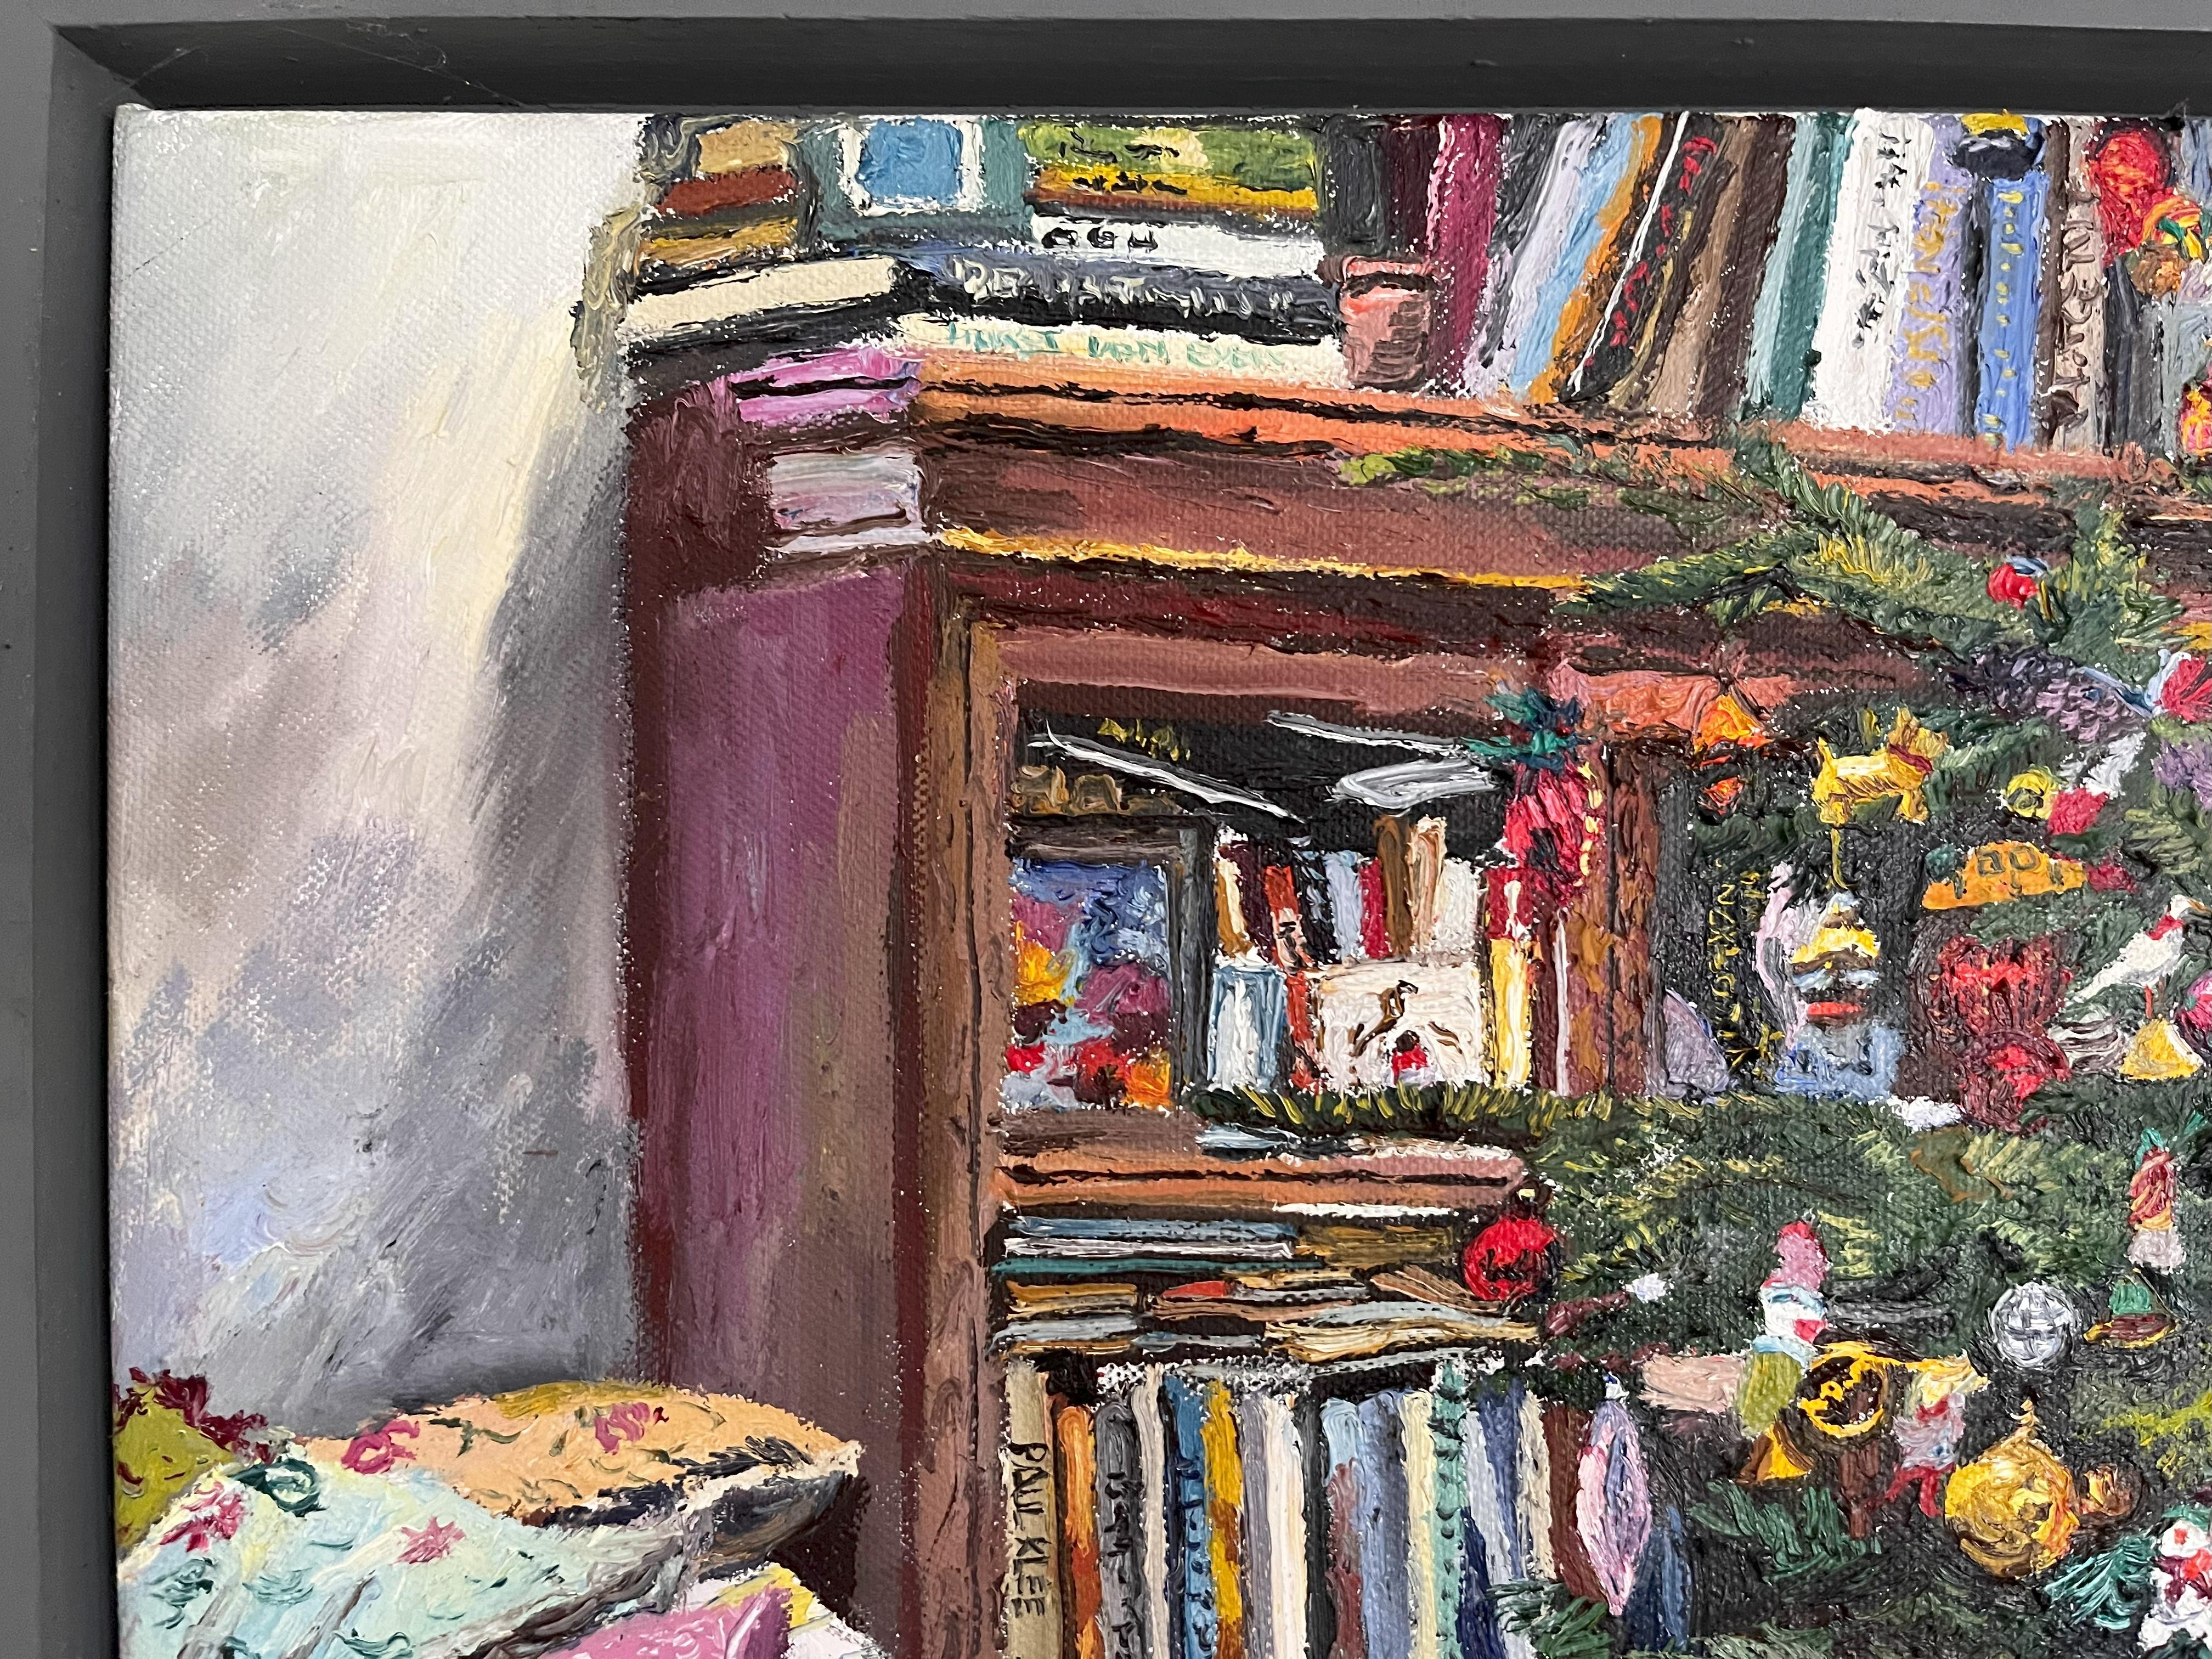 Peinture à l'huile originale de Mellisa Scott-Miller  (né en 1959). 
Chat dormant près du sapin de Noël  daté de 2009
Huile sur toile,
Format encadré 24